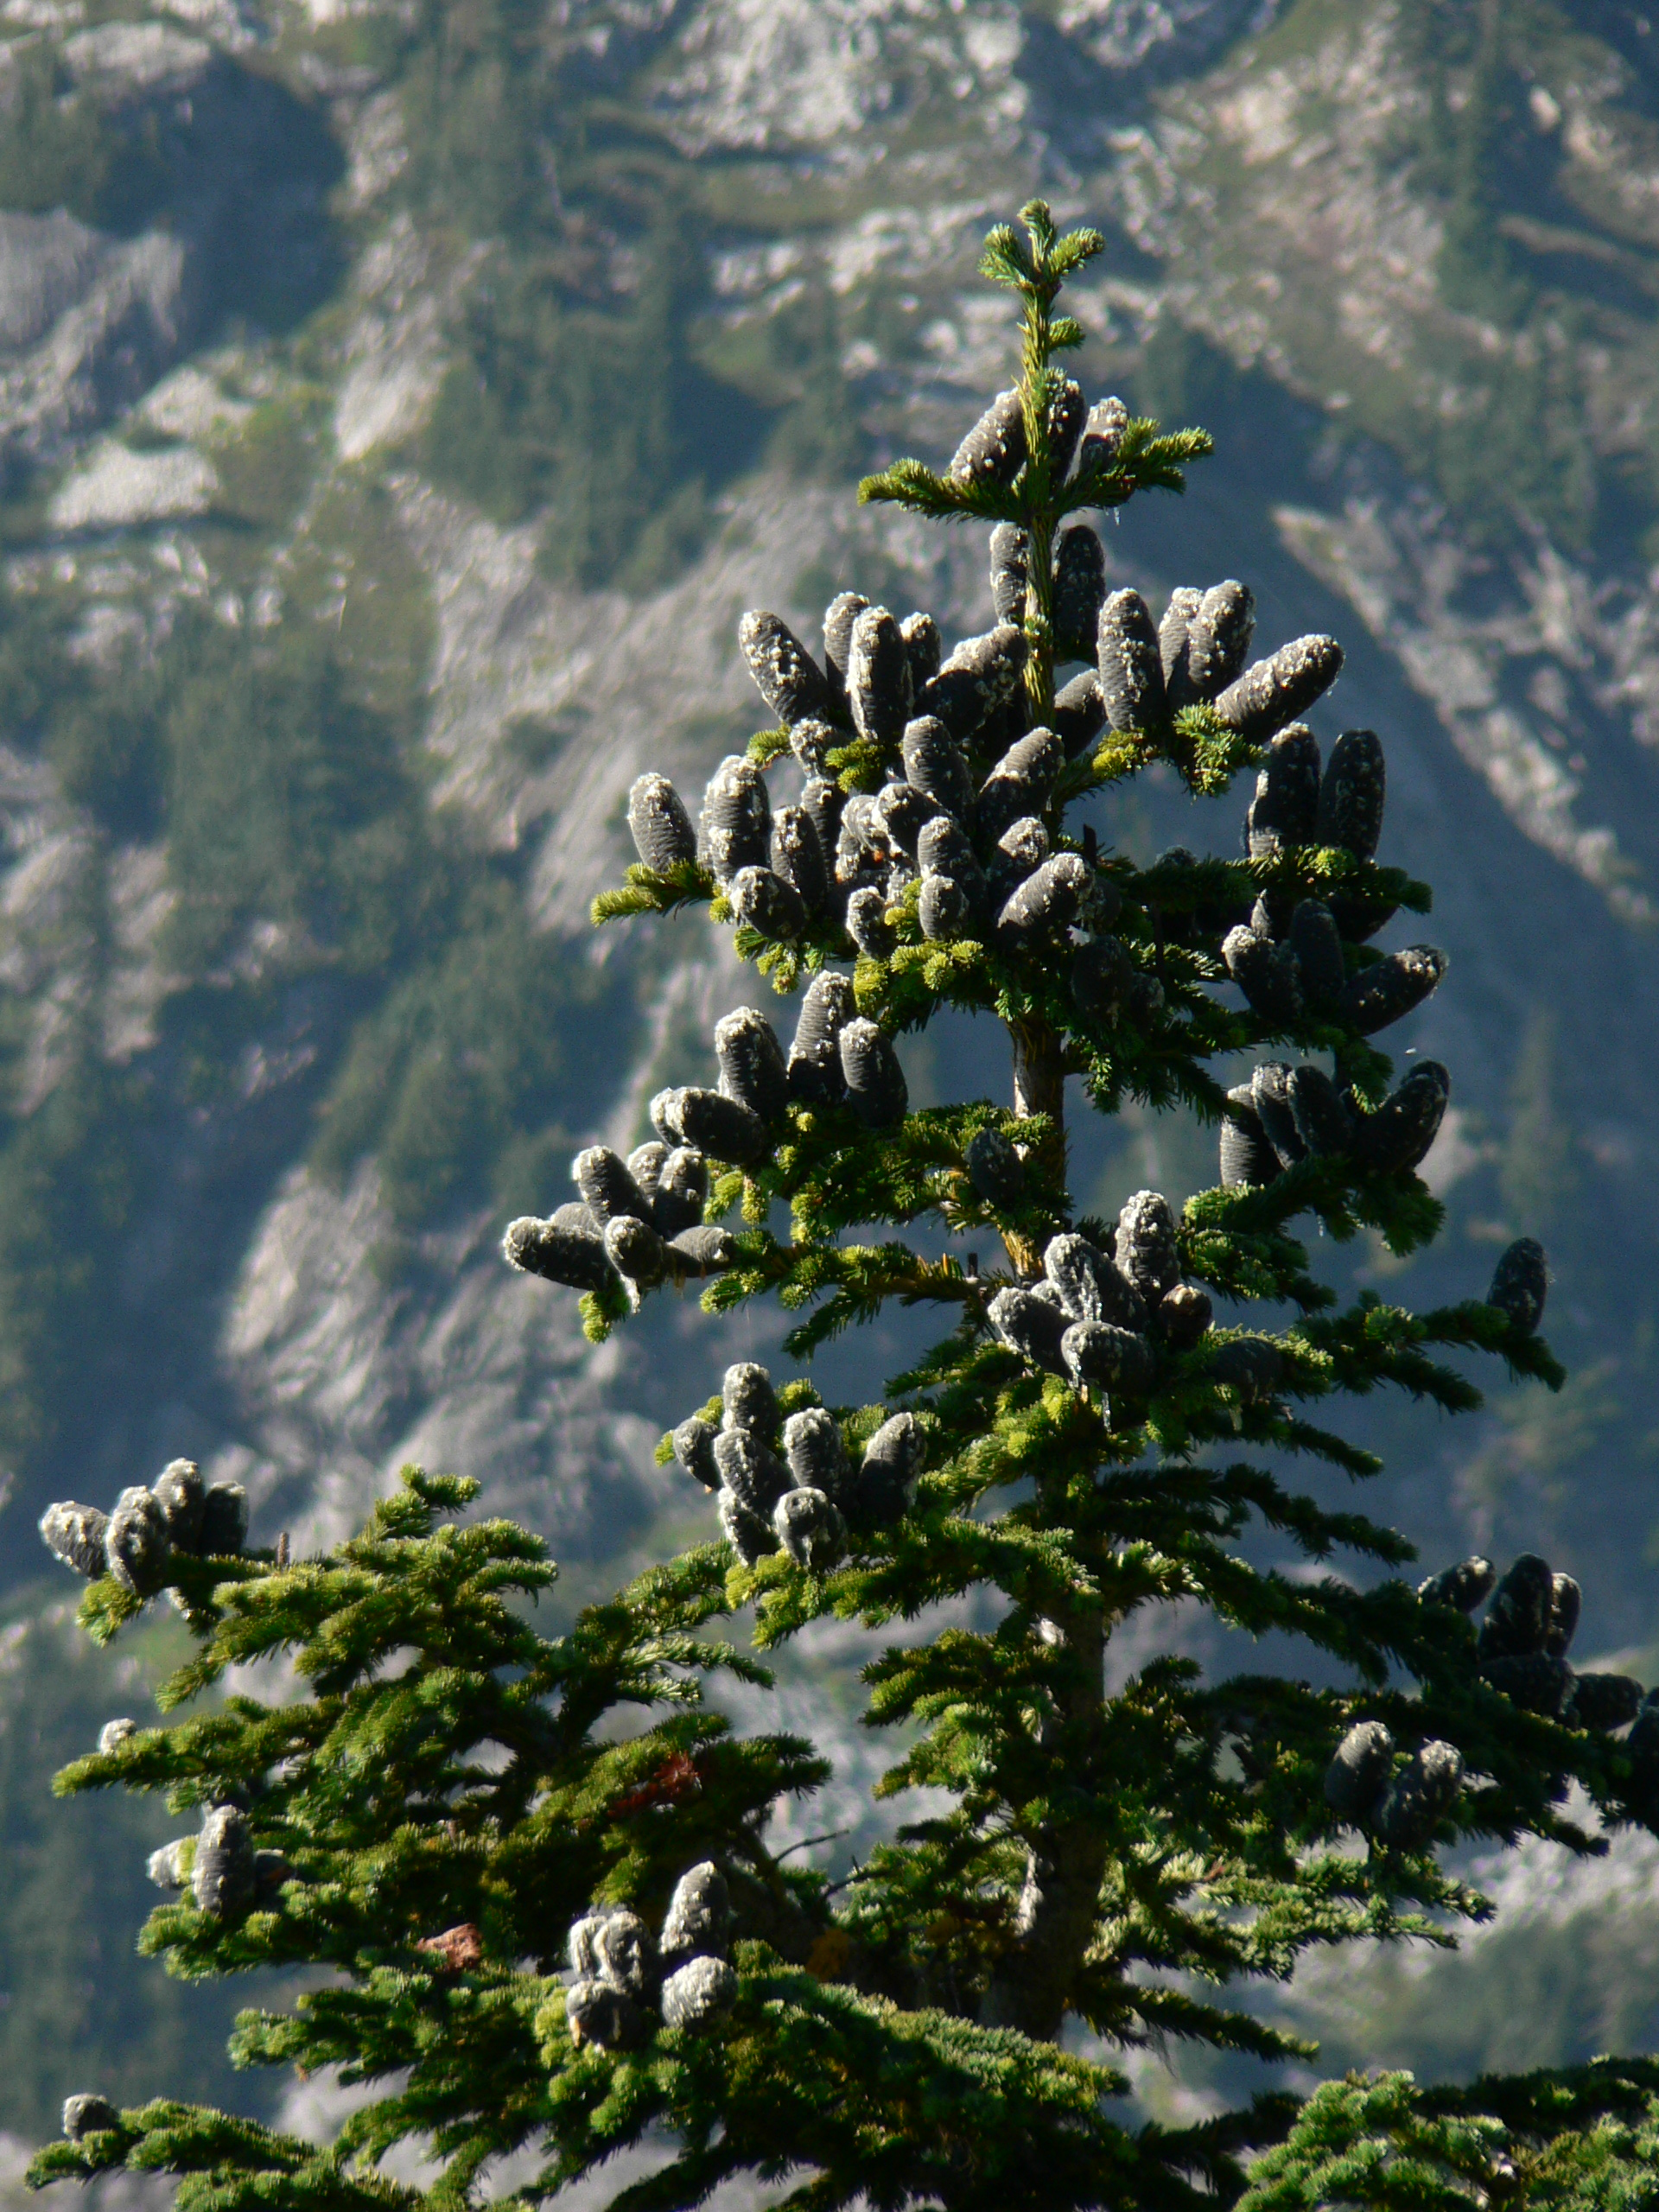 State tree of Yukon